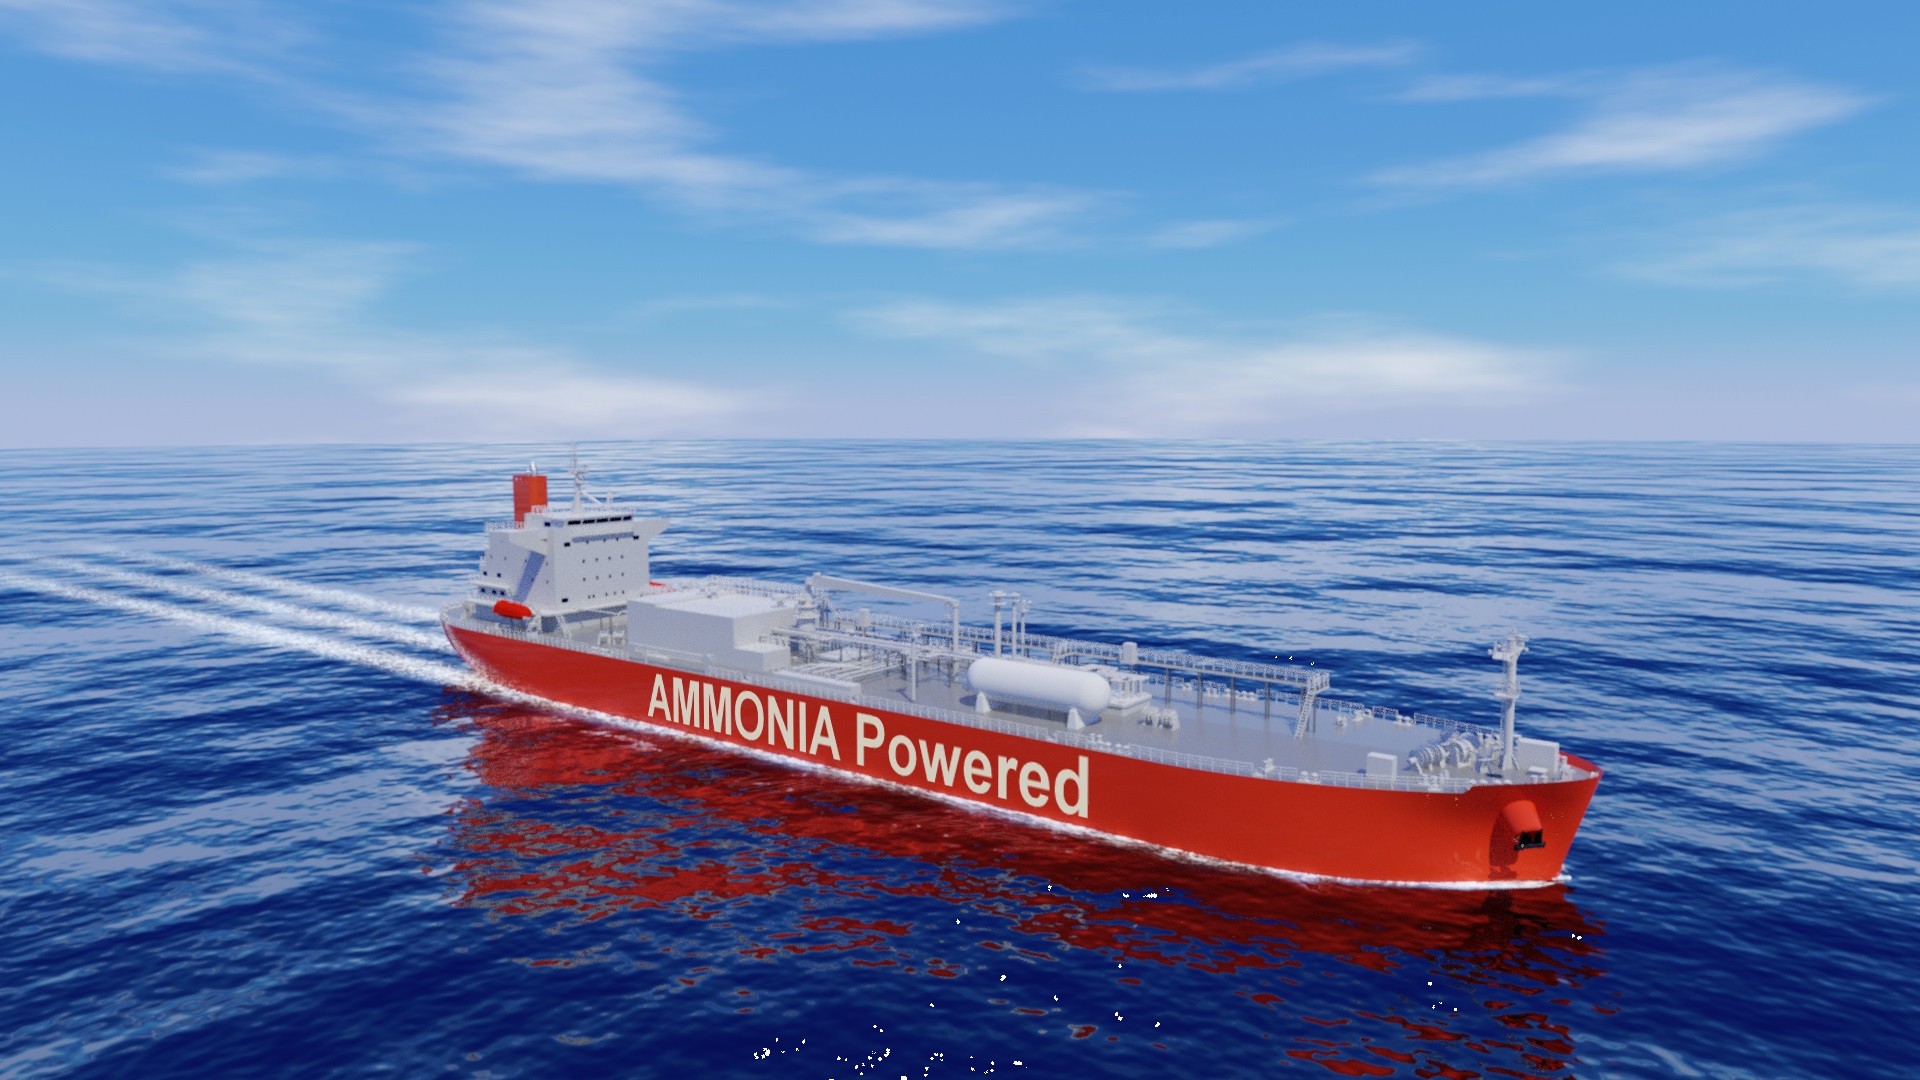 アンモニア燃料船の基本設計承認(AiP)をClassNKとロイドの2船級から取得